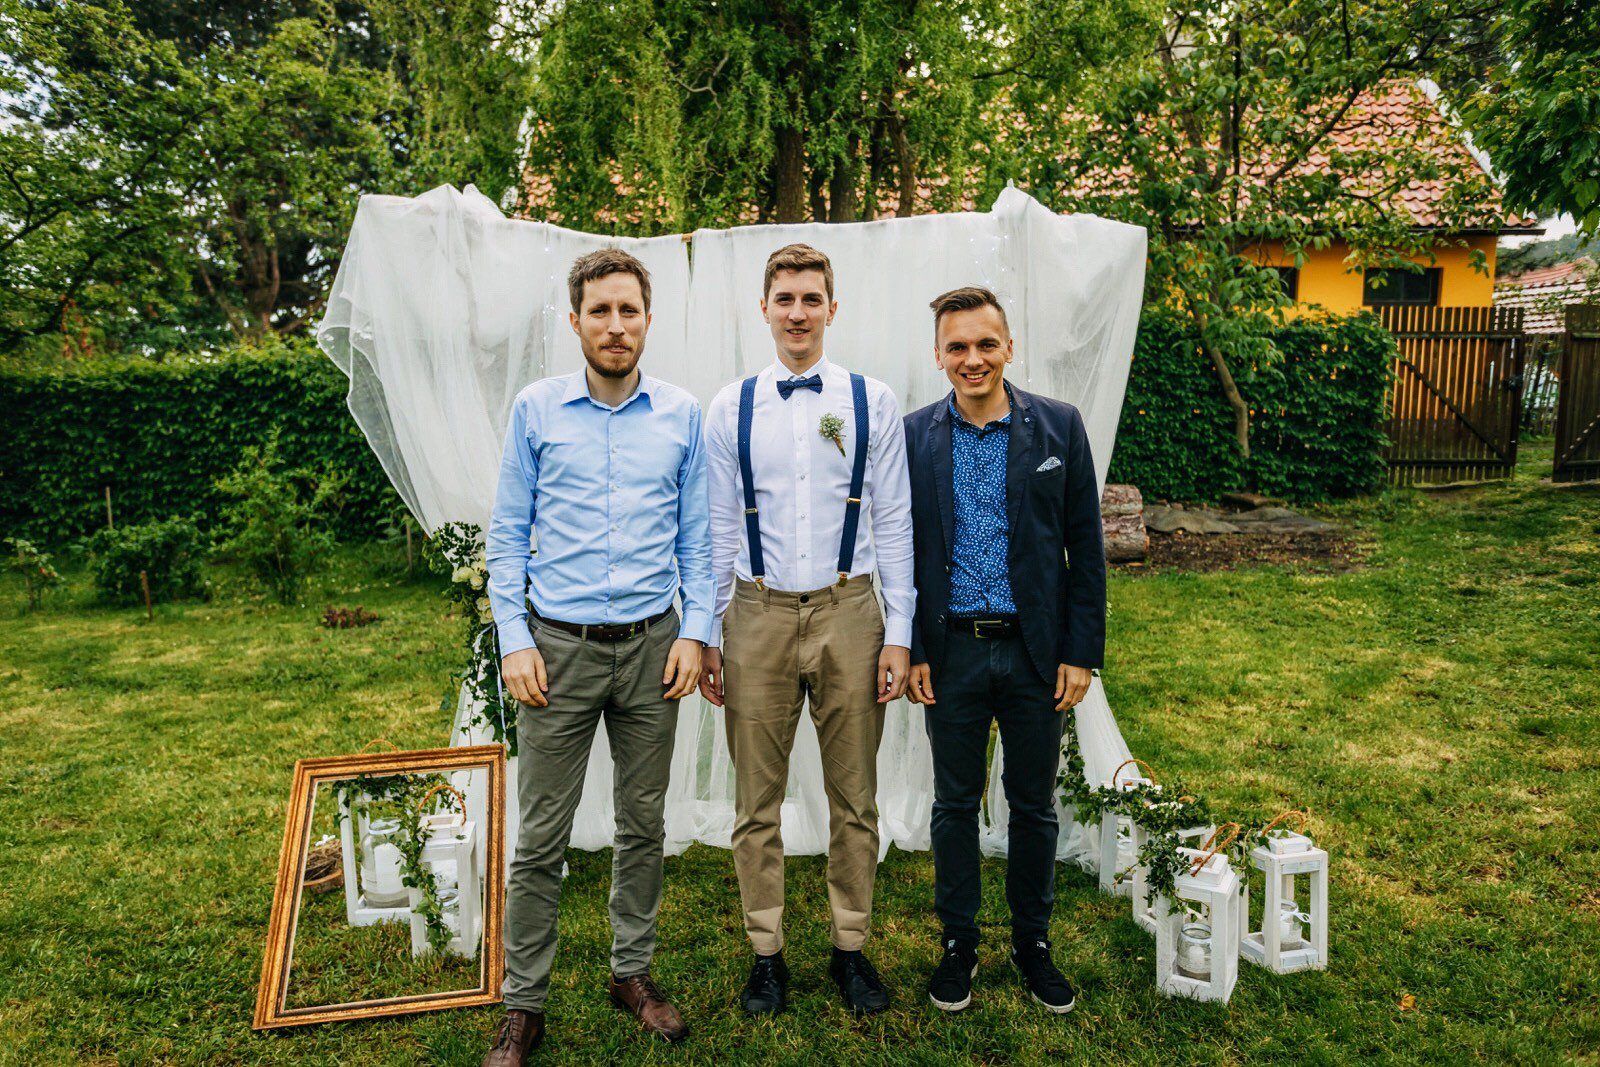 Svatba Janka – hodně štěstí na společné cestě životem